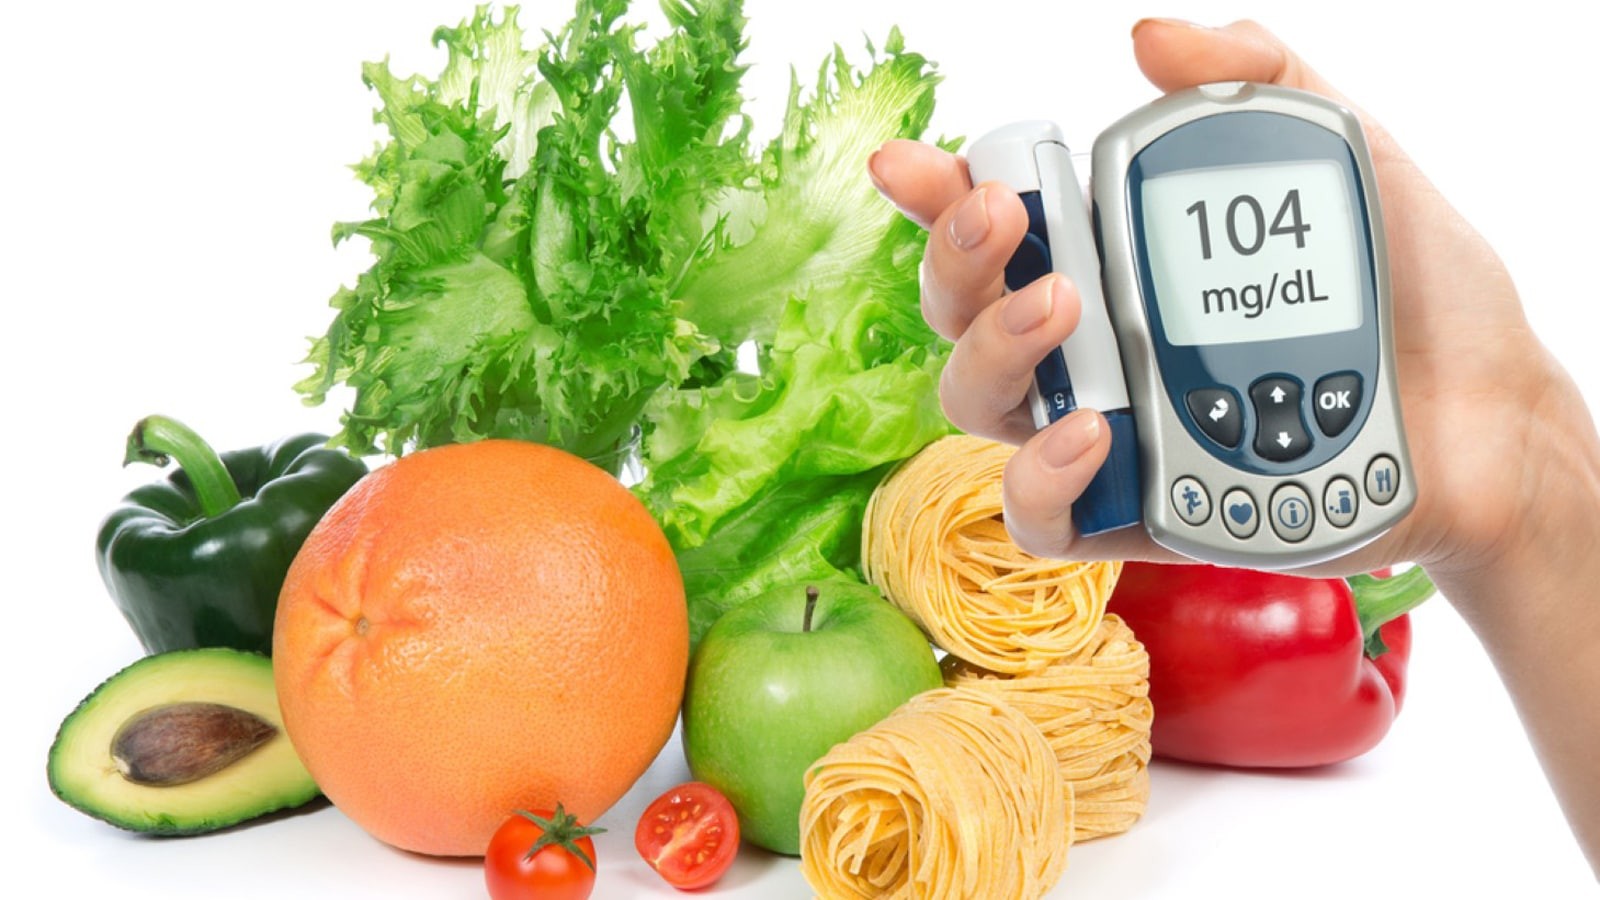 Chế độ dinh dưỡng cũng tác động không nhỏ đến chỉ số đường huyết